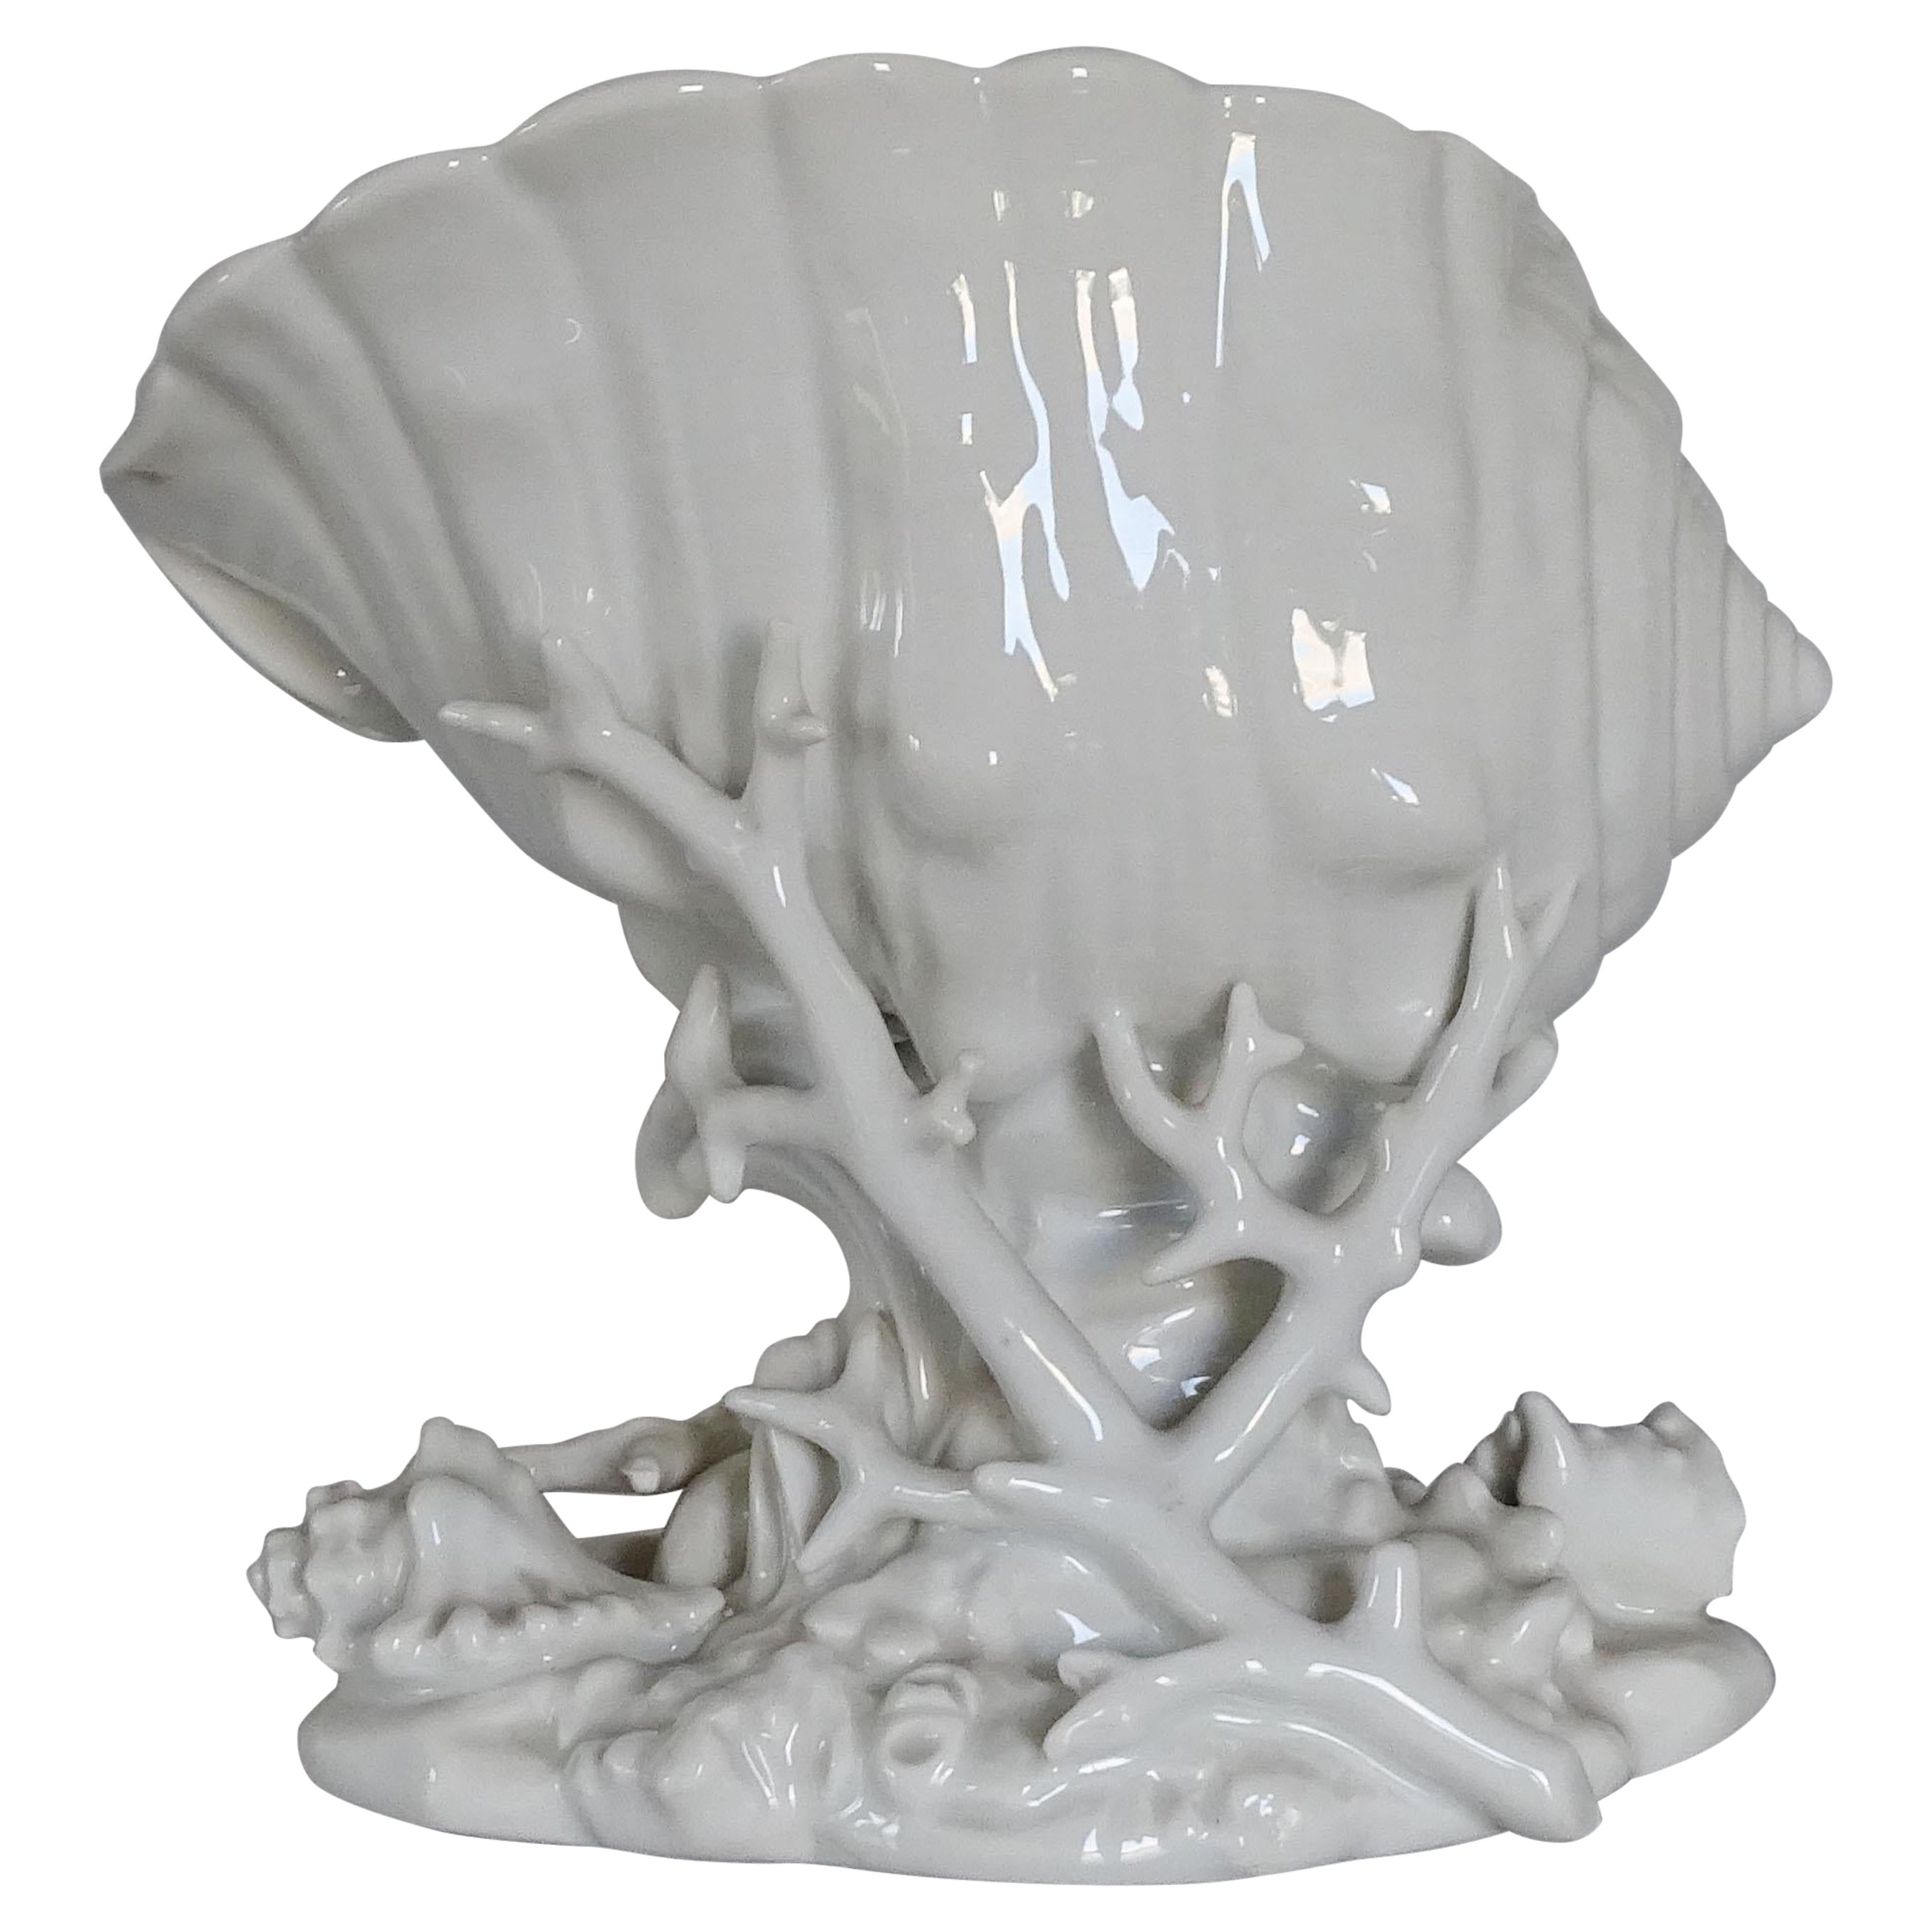 Centre de table Shells en céramique blanche des années 1940 de Richard Ginori.